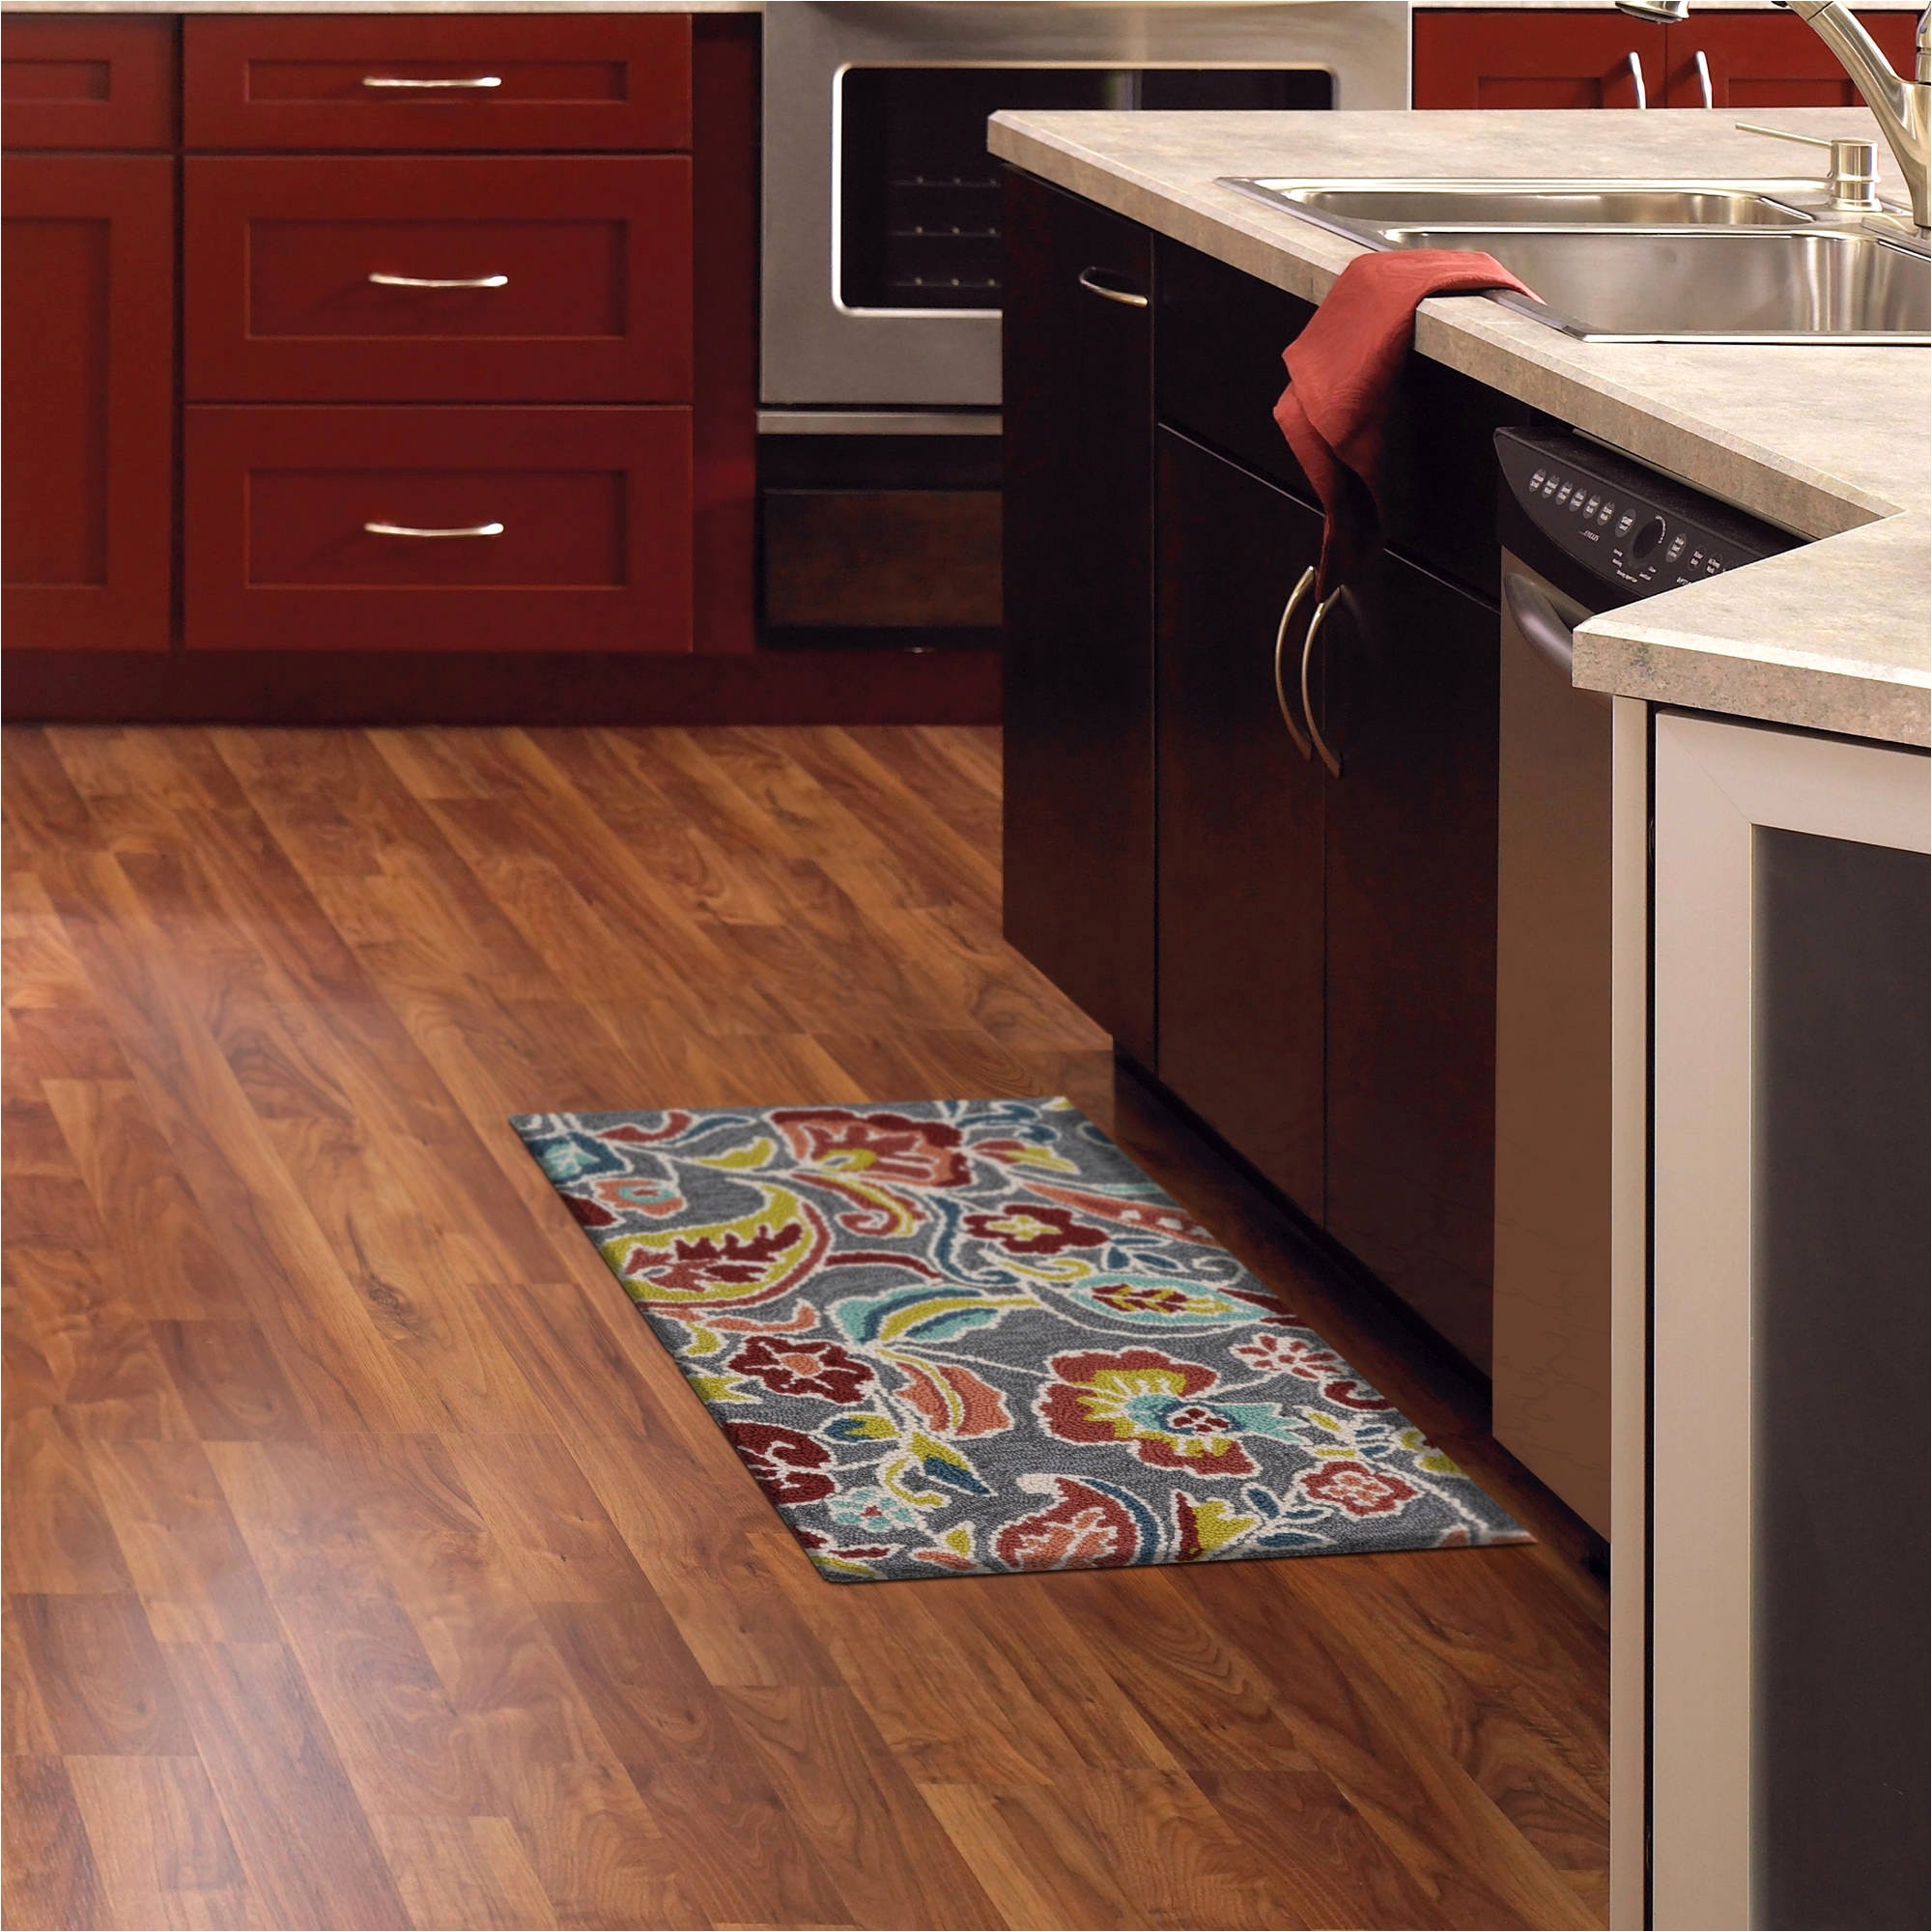 kitchen floor mats amazon